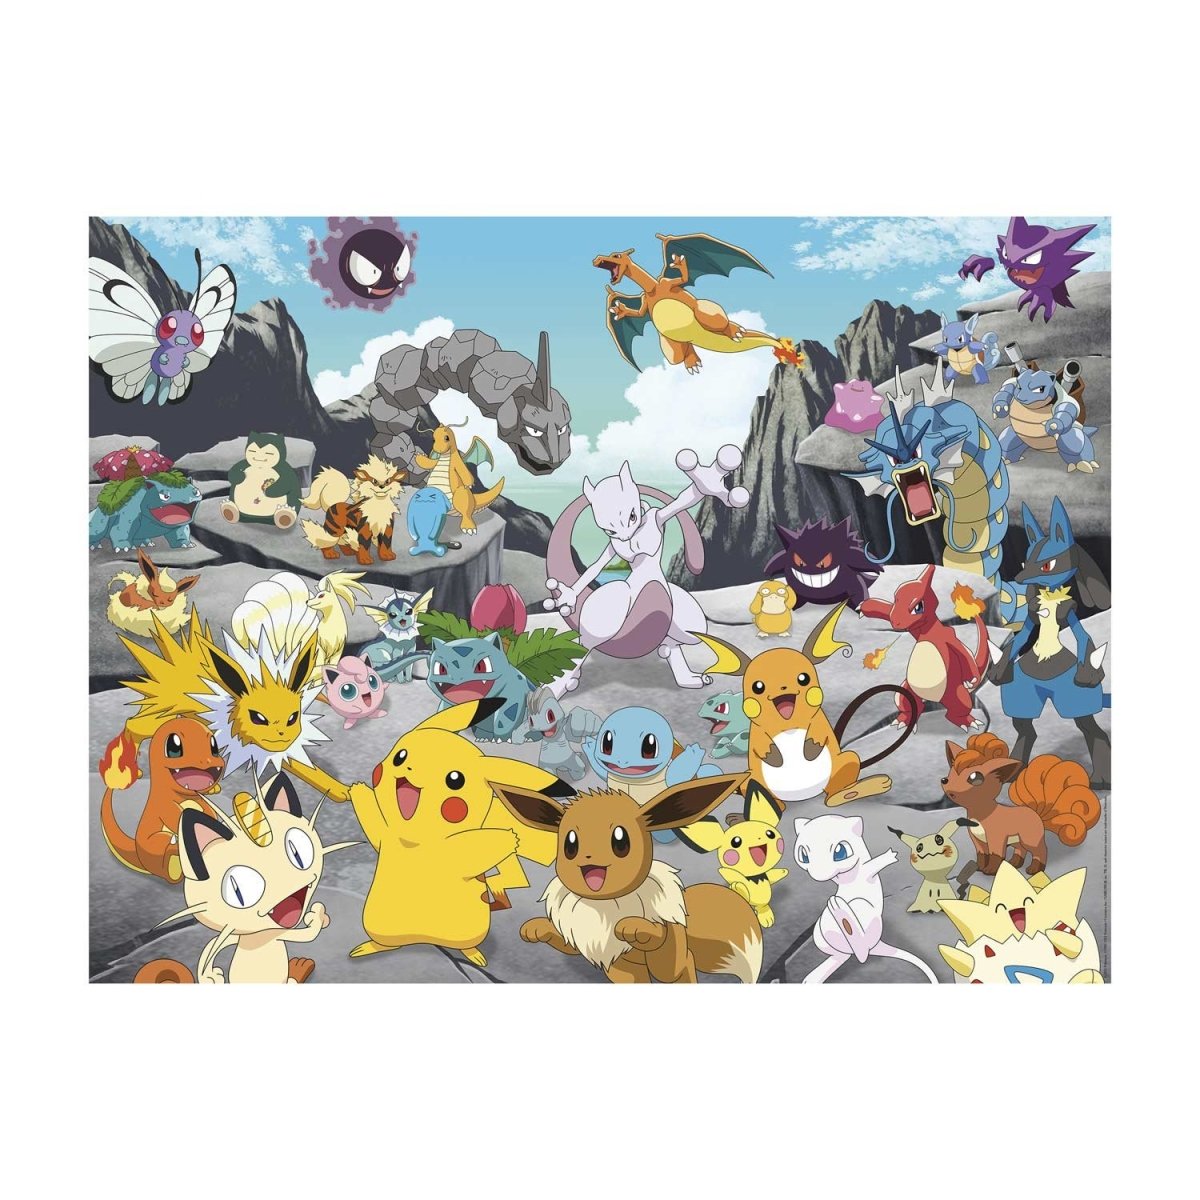 Ravensburger Puzzle - Pokémon Classics, 1500 Pieces - Playpolis